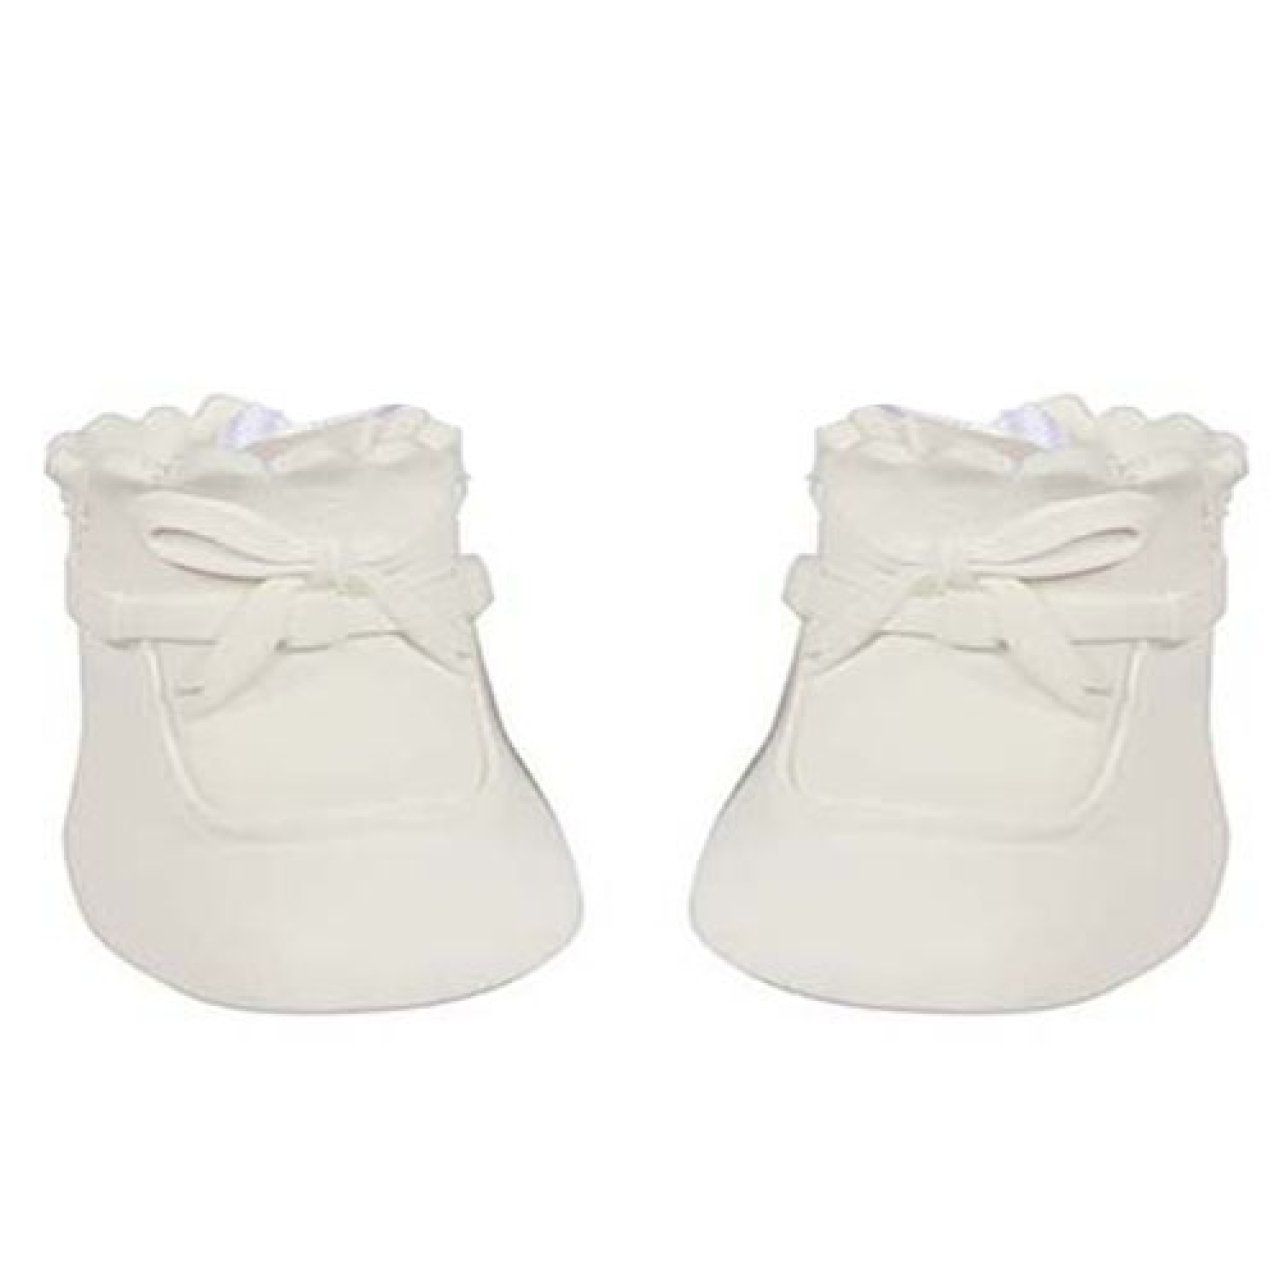 Tortendeko, Babyschuhe weiß, nicht essbar 6,2 cm | MEINCUPCAKE Shop